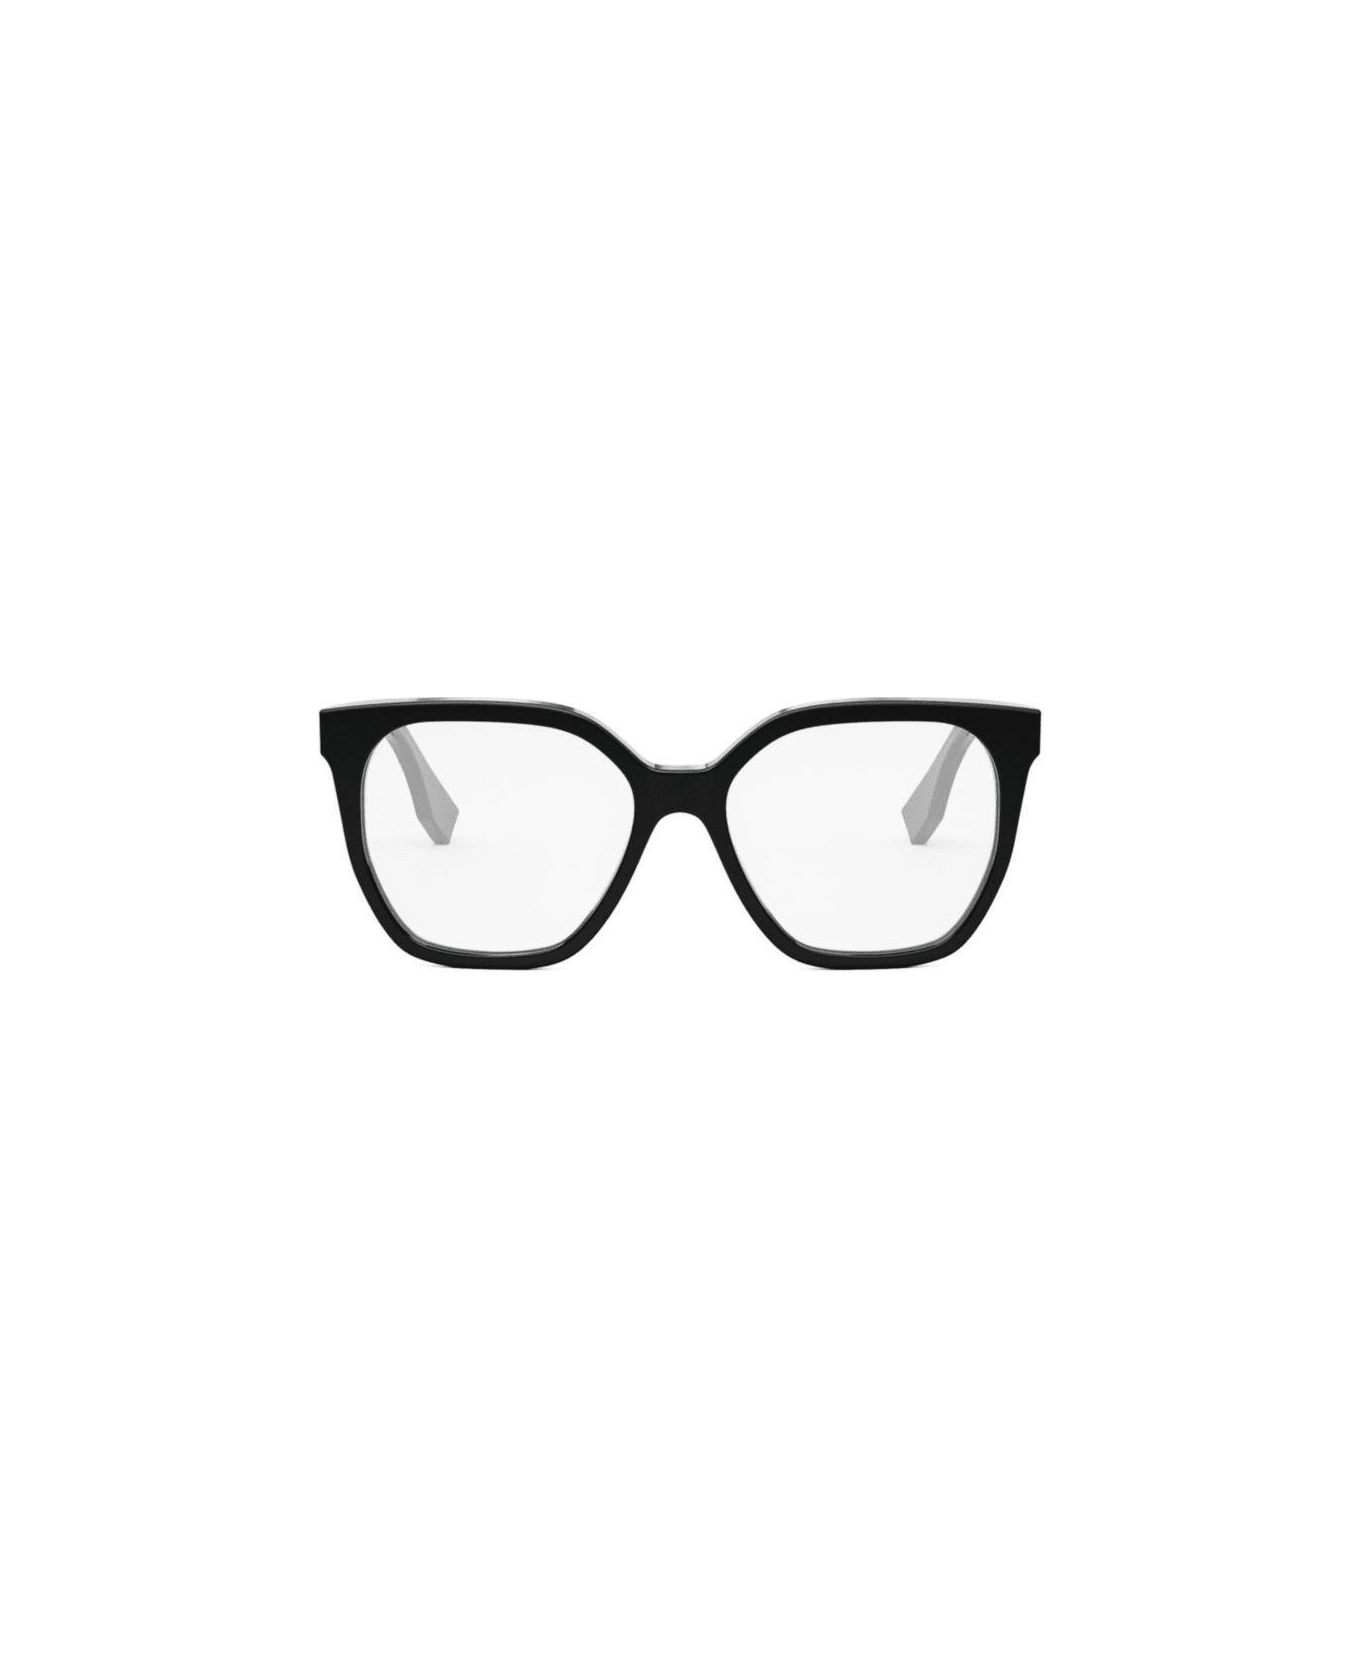 Fendi Eyewear Square Frame Glasses - 001 アイウェア